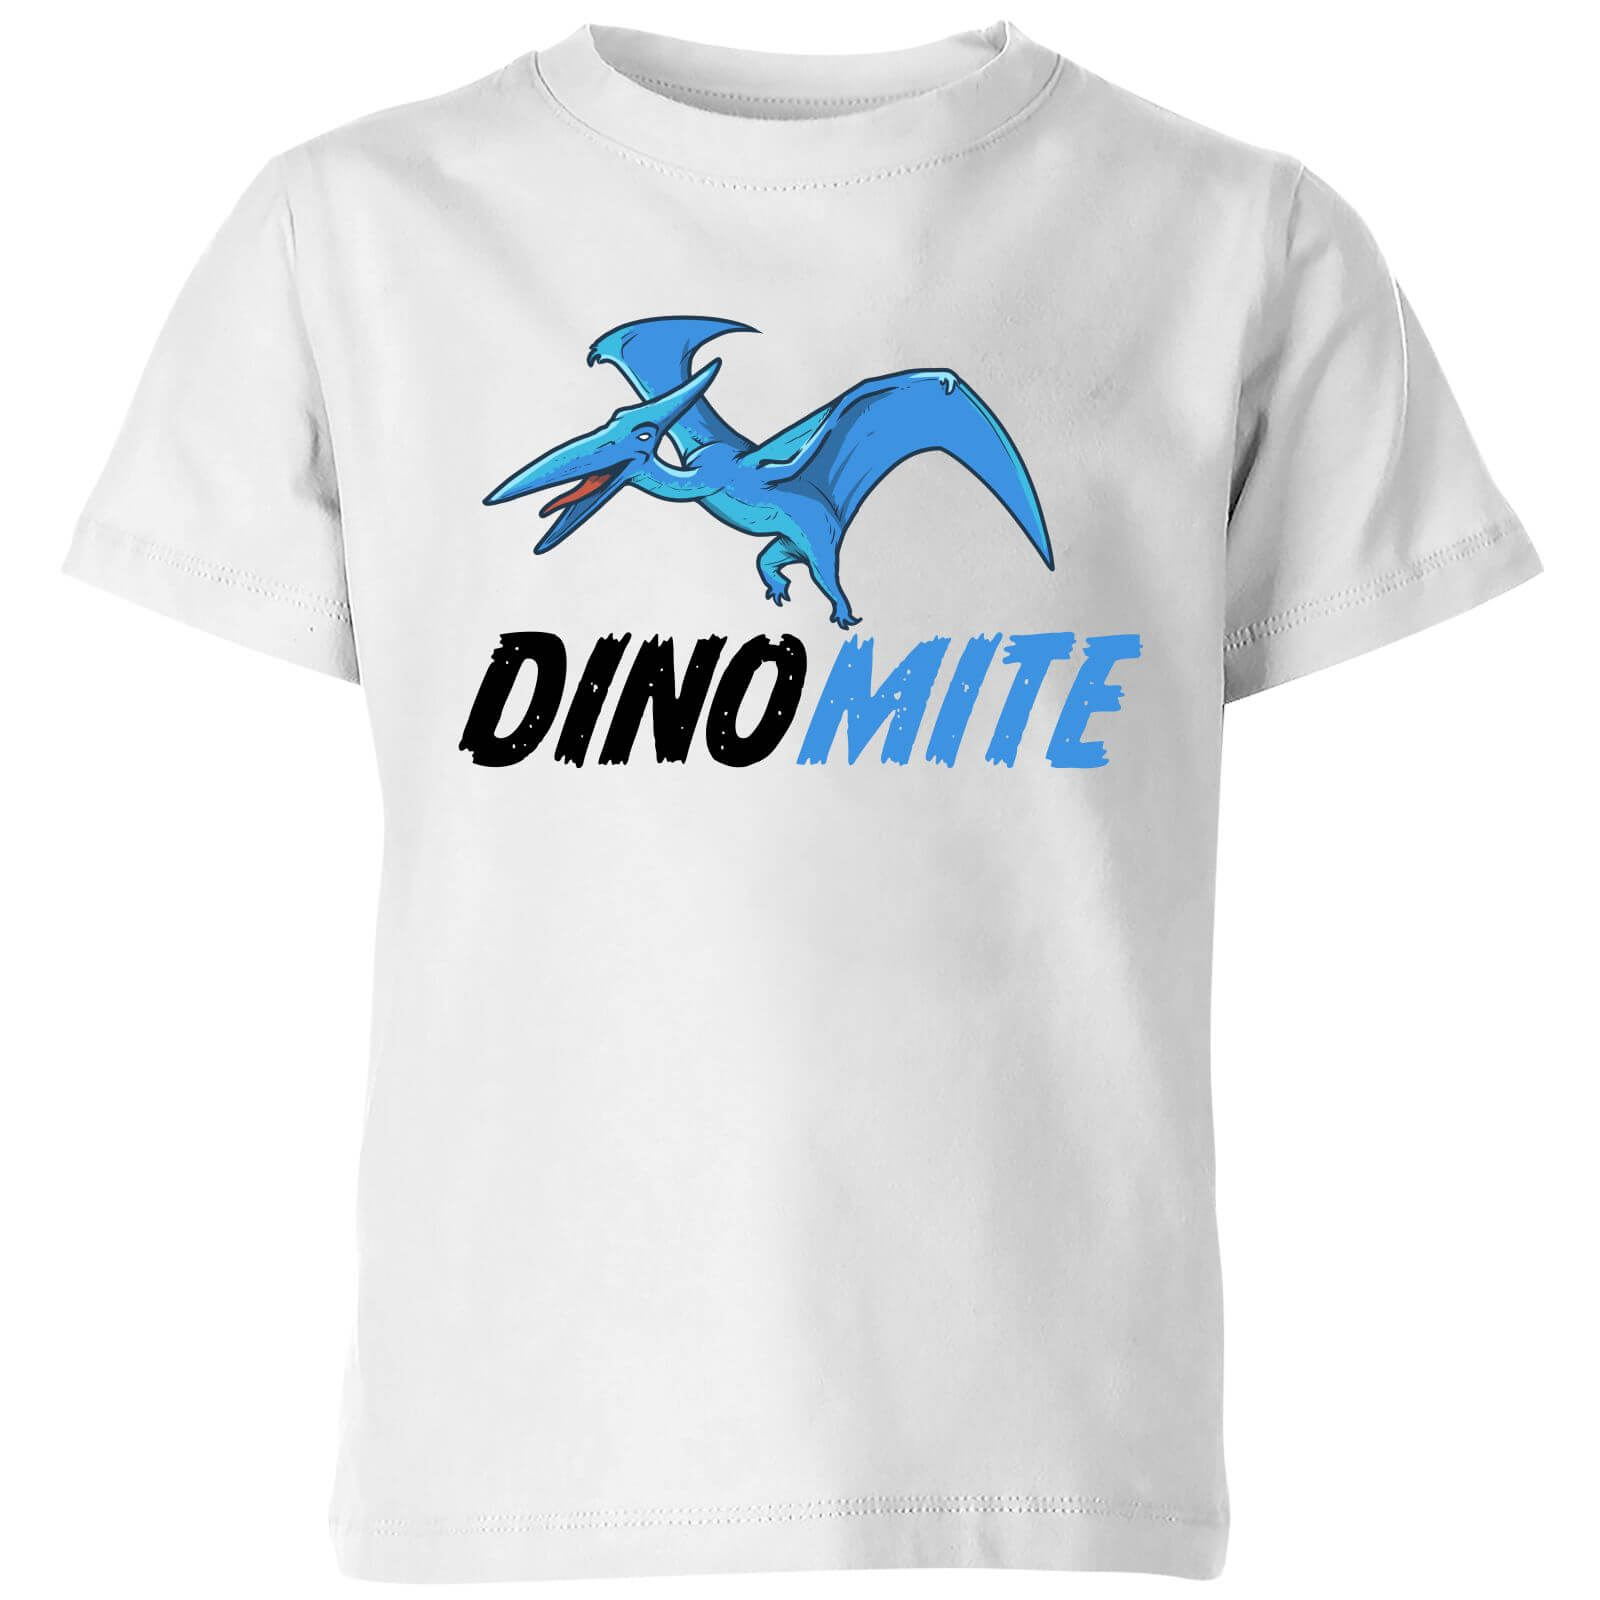 Dino Mite Kids' T-Shirt - White - 3-4 Years - White